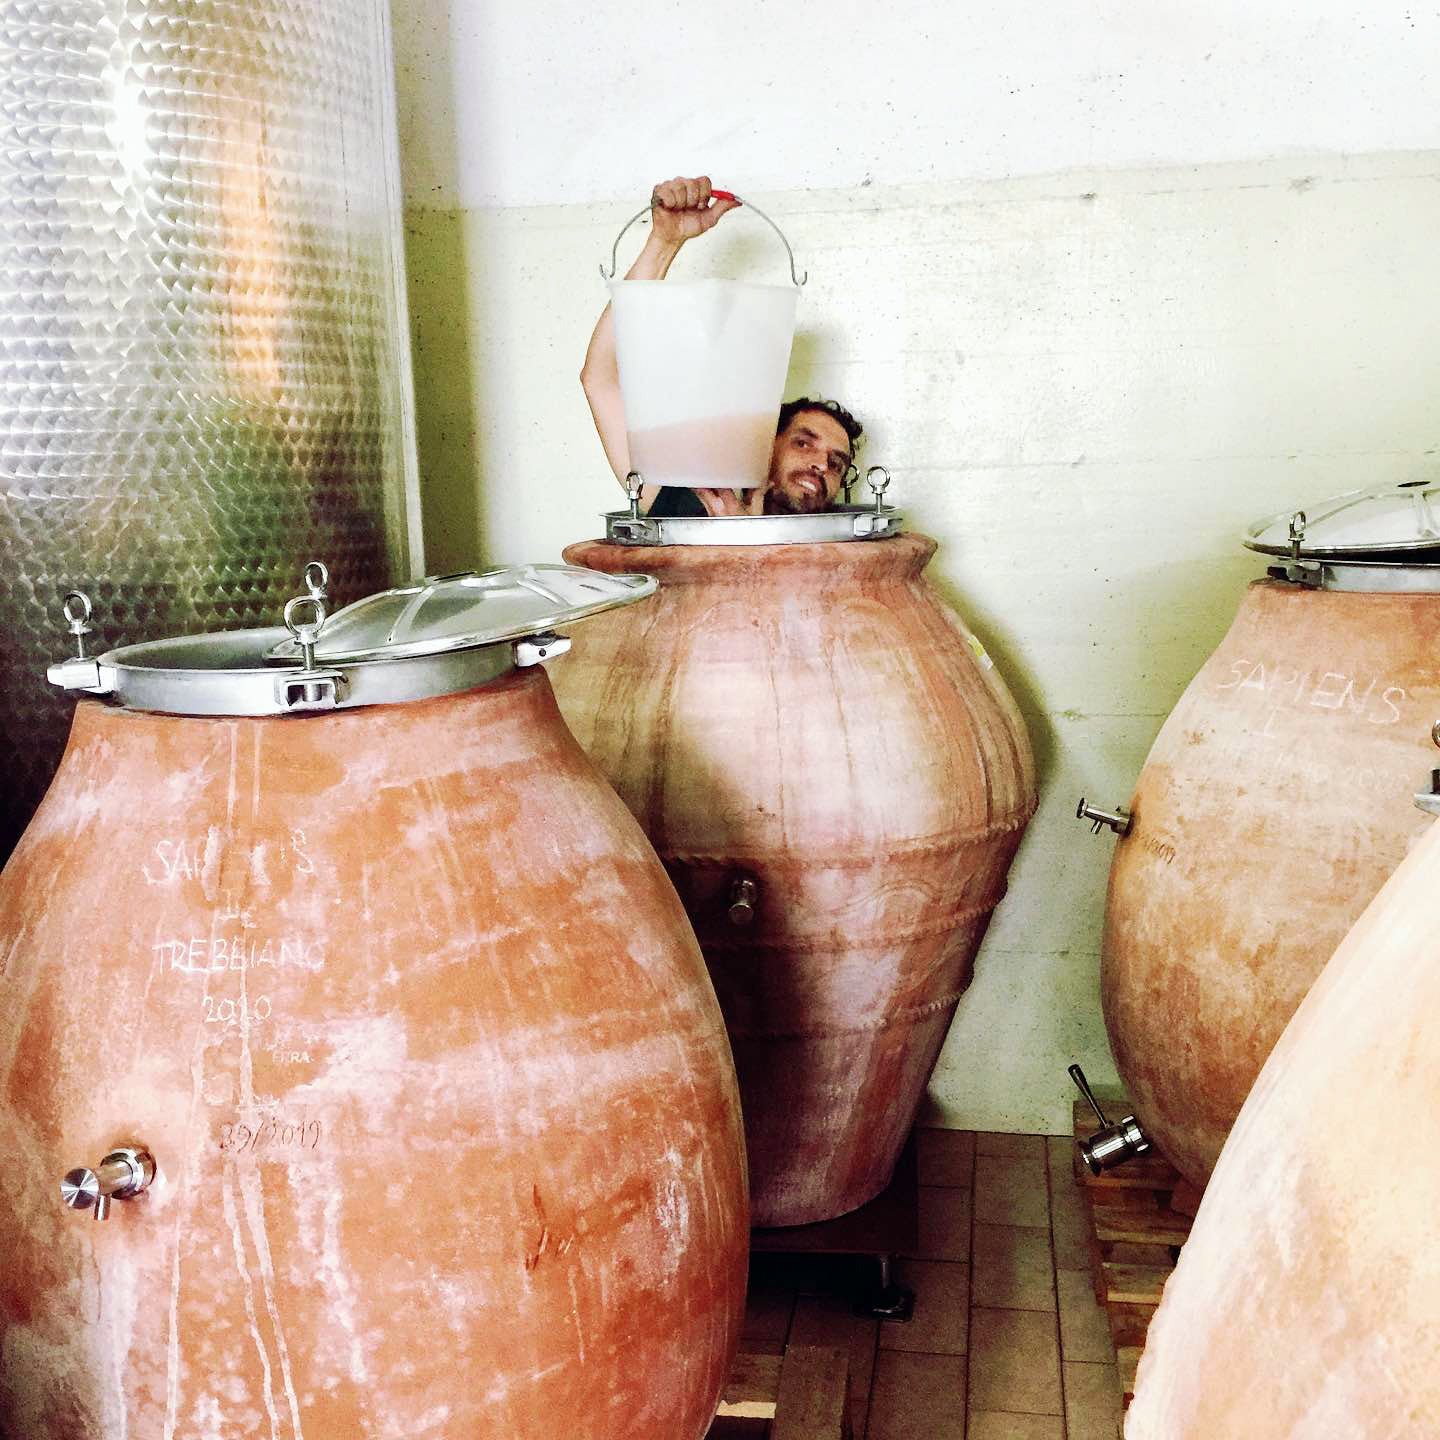 La Via Del Colle, natural winemaker, Emilia Romagna, Italy, Amphora wine